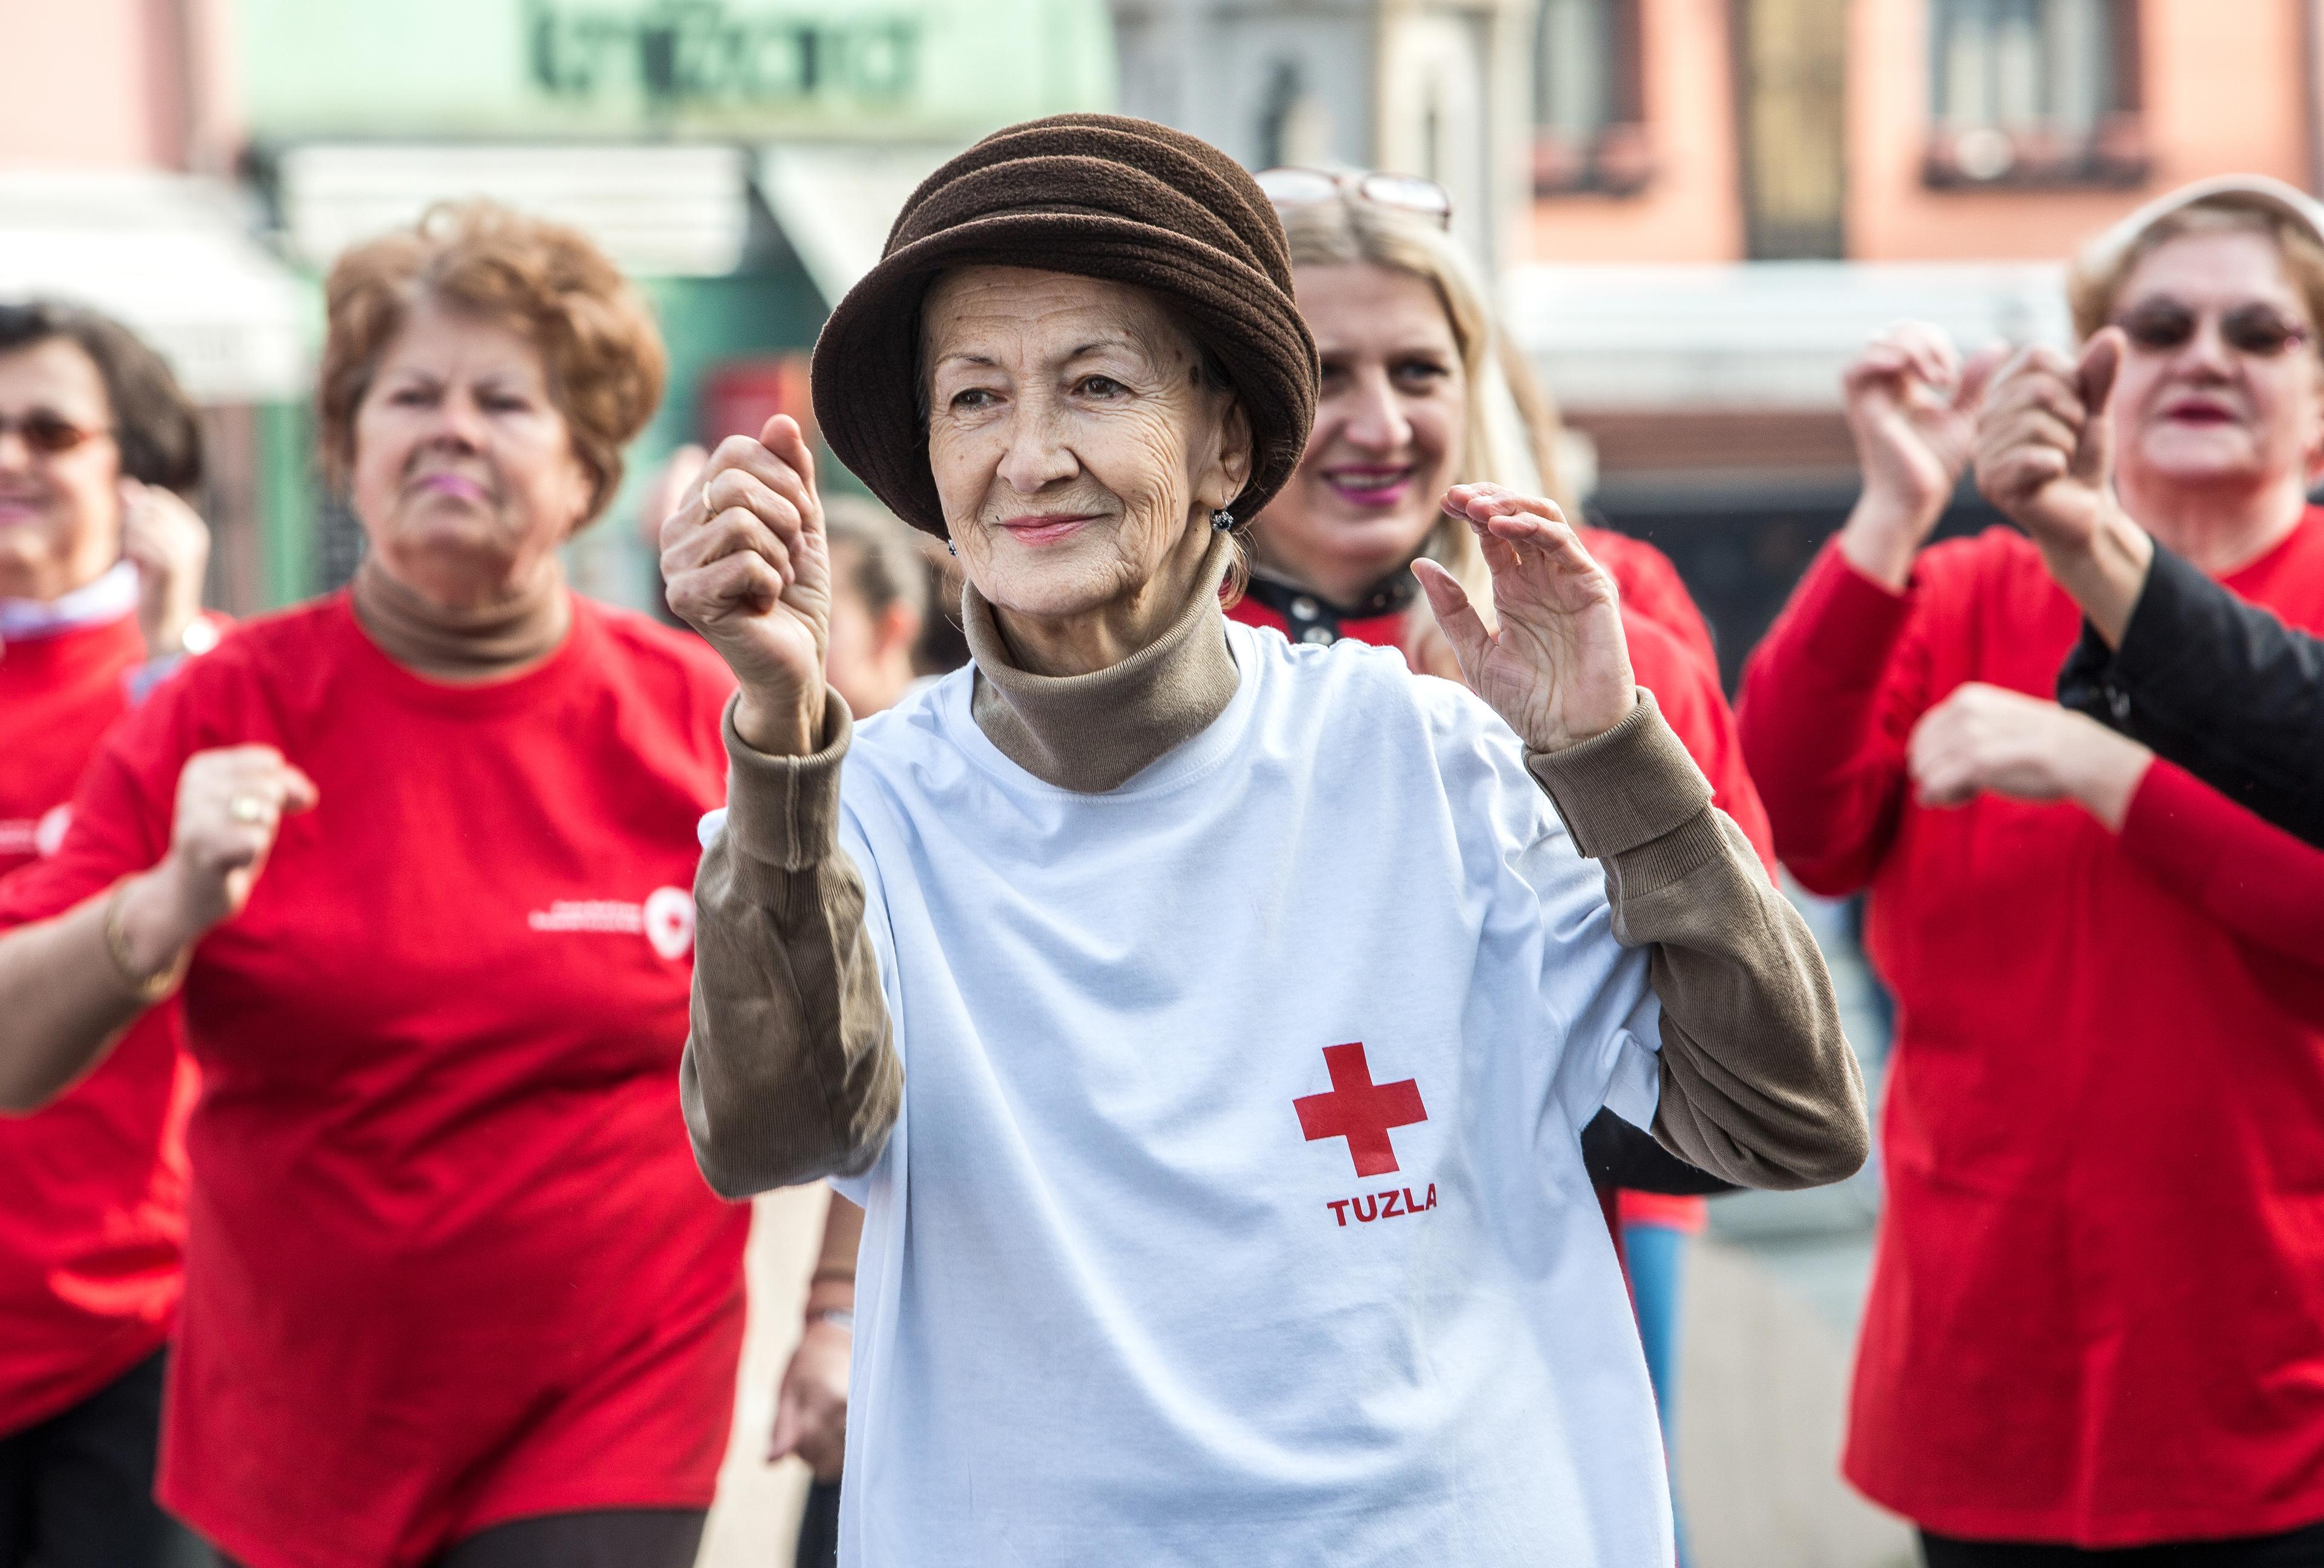 Donne anziane che fanno ginnastica. Sembrano divertirsi con questo sport. Un'anziana signora indossa un cappello e una maglietta con la Croce Rossa di Tuzla (Bosnia).